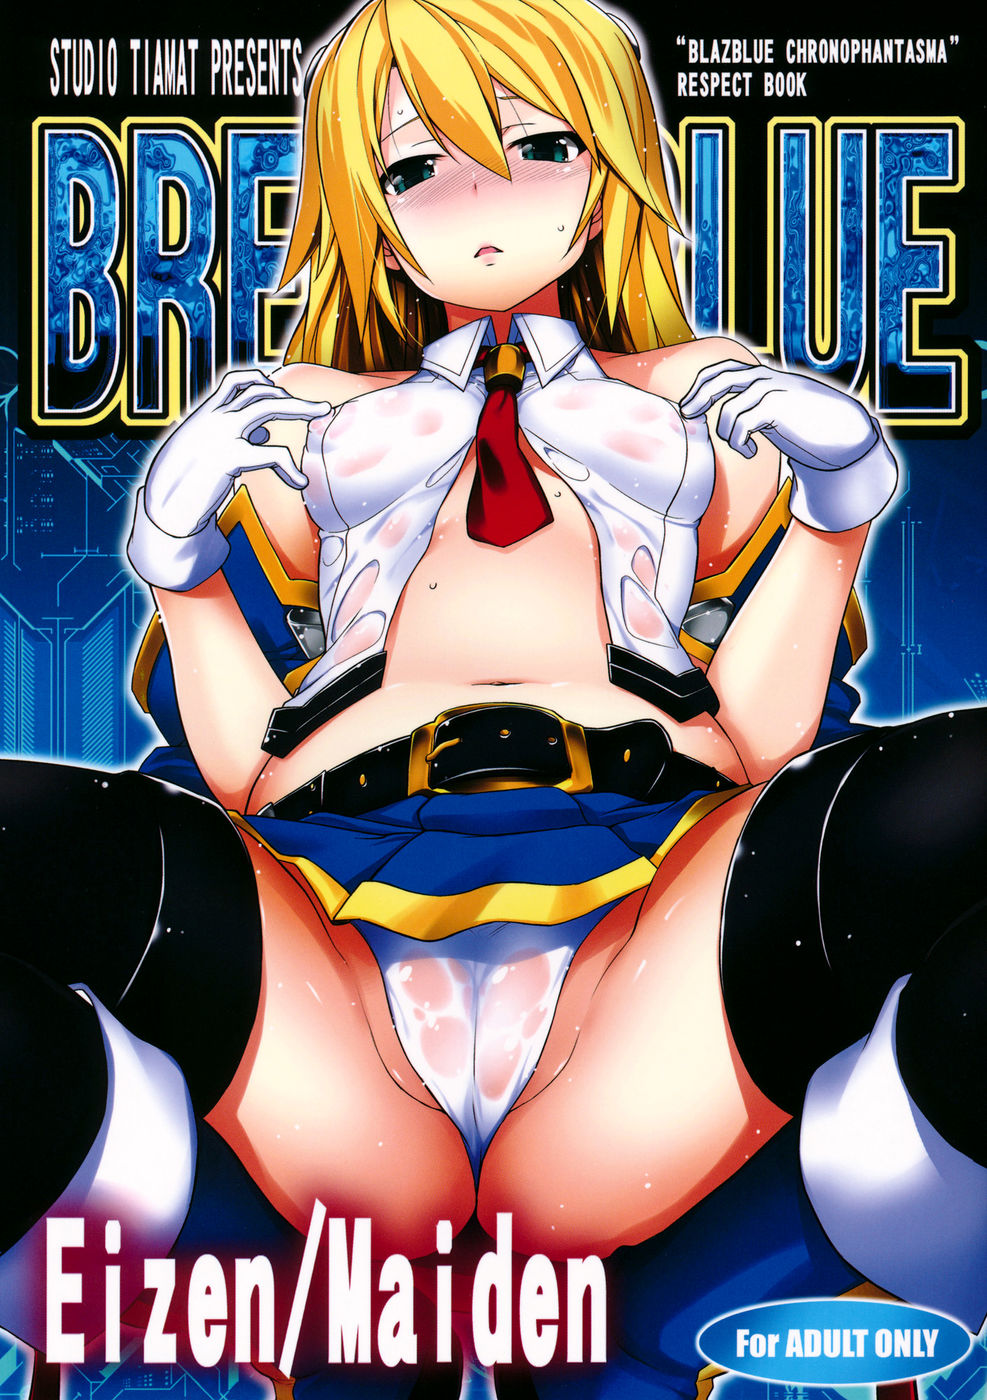 Hentai Manga Comic-BREAK BLUE Eizen/Maiden-Read-1